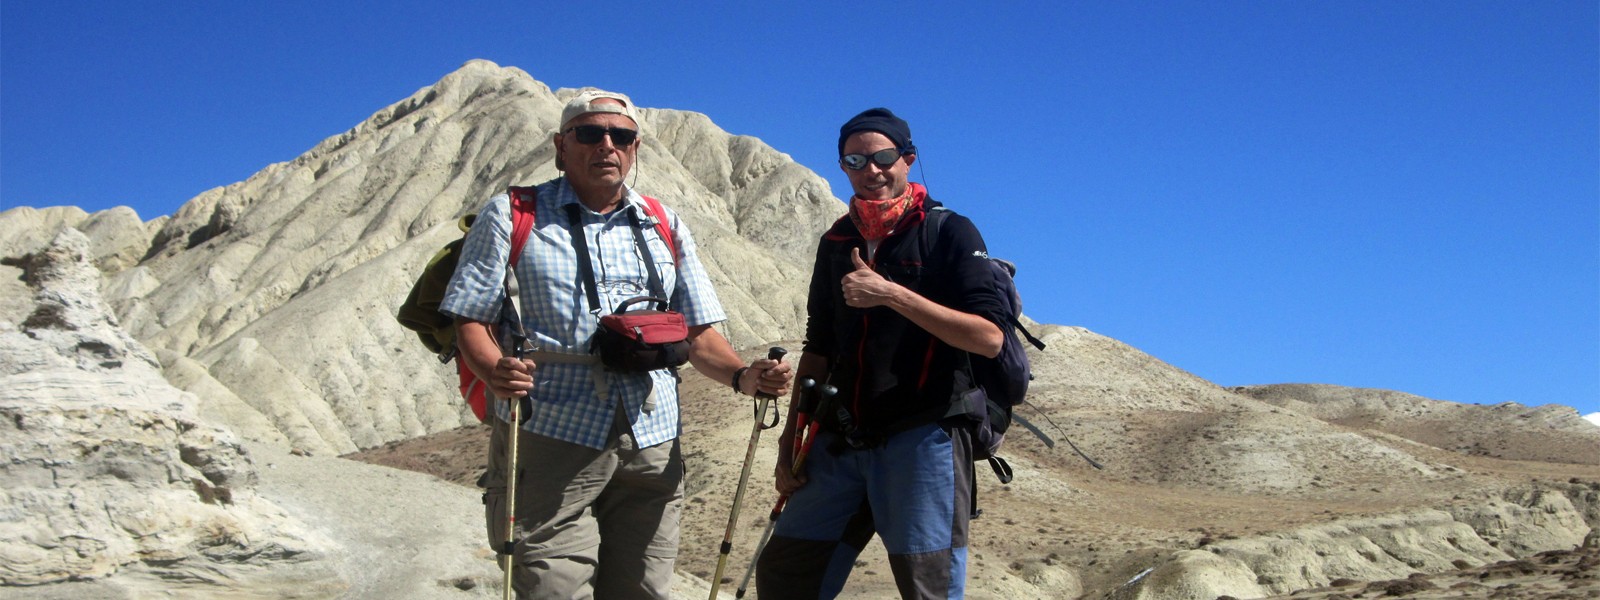 Lo-Manthang, Lori Gompa and Muktinath Trekking